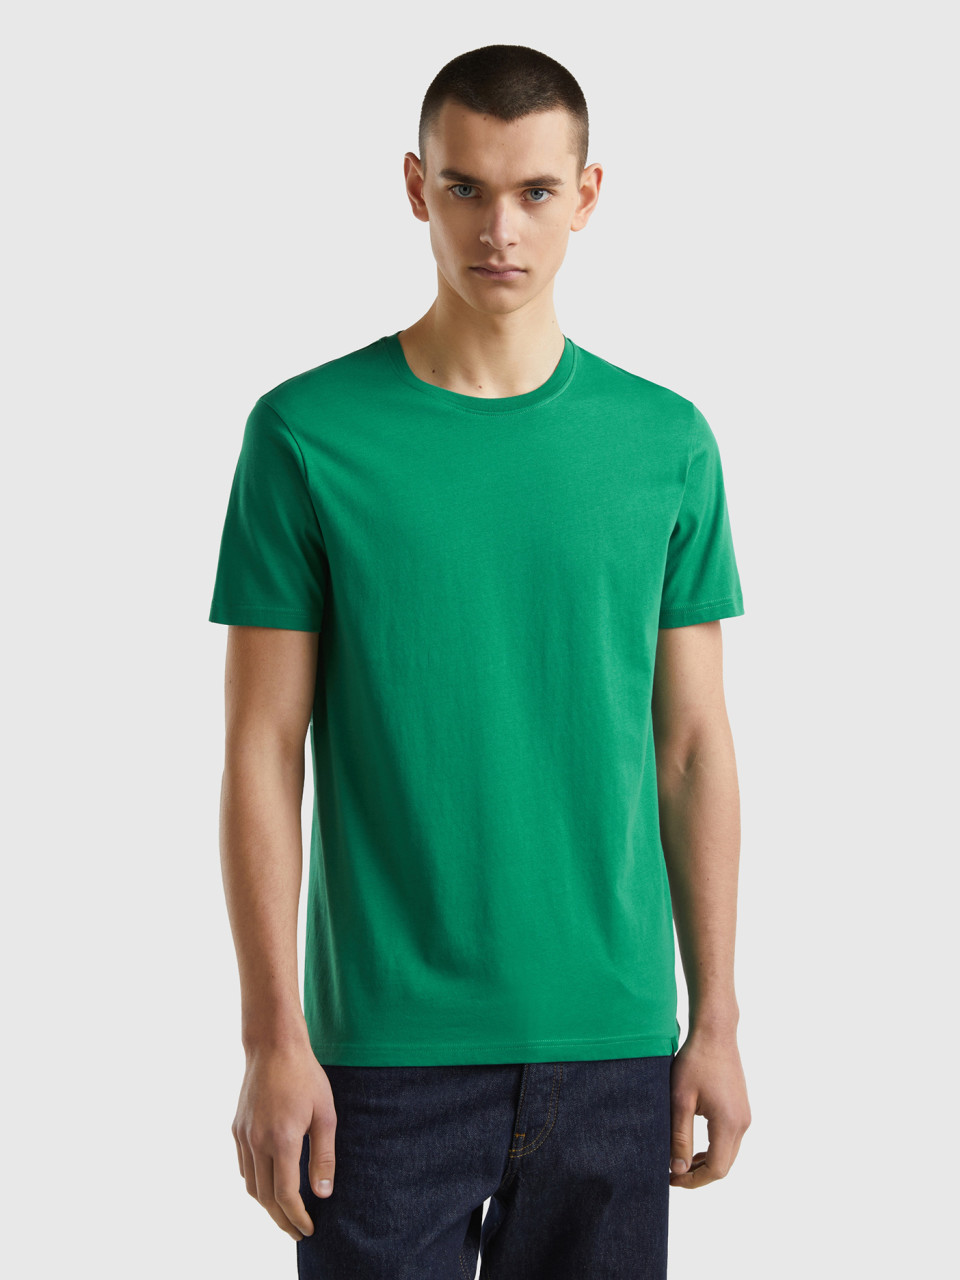 Benetton, Camiseta Verde Oscuro, Verde Oscuro, Hombre